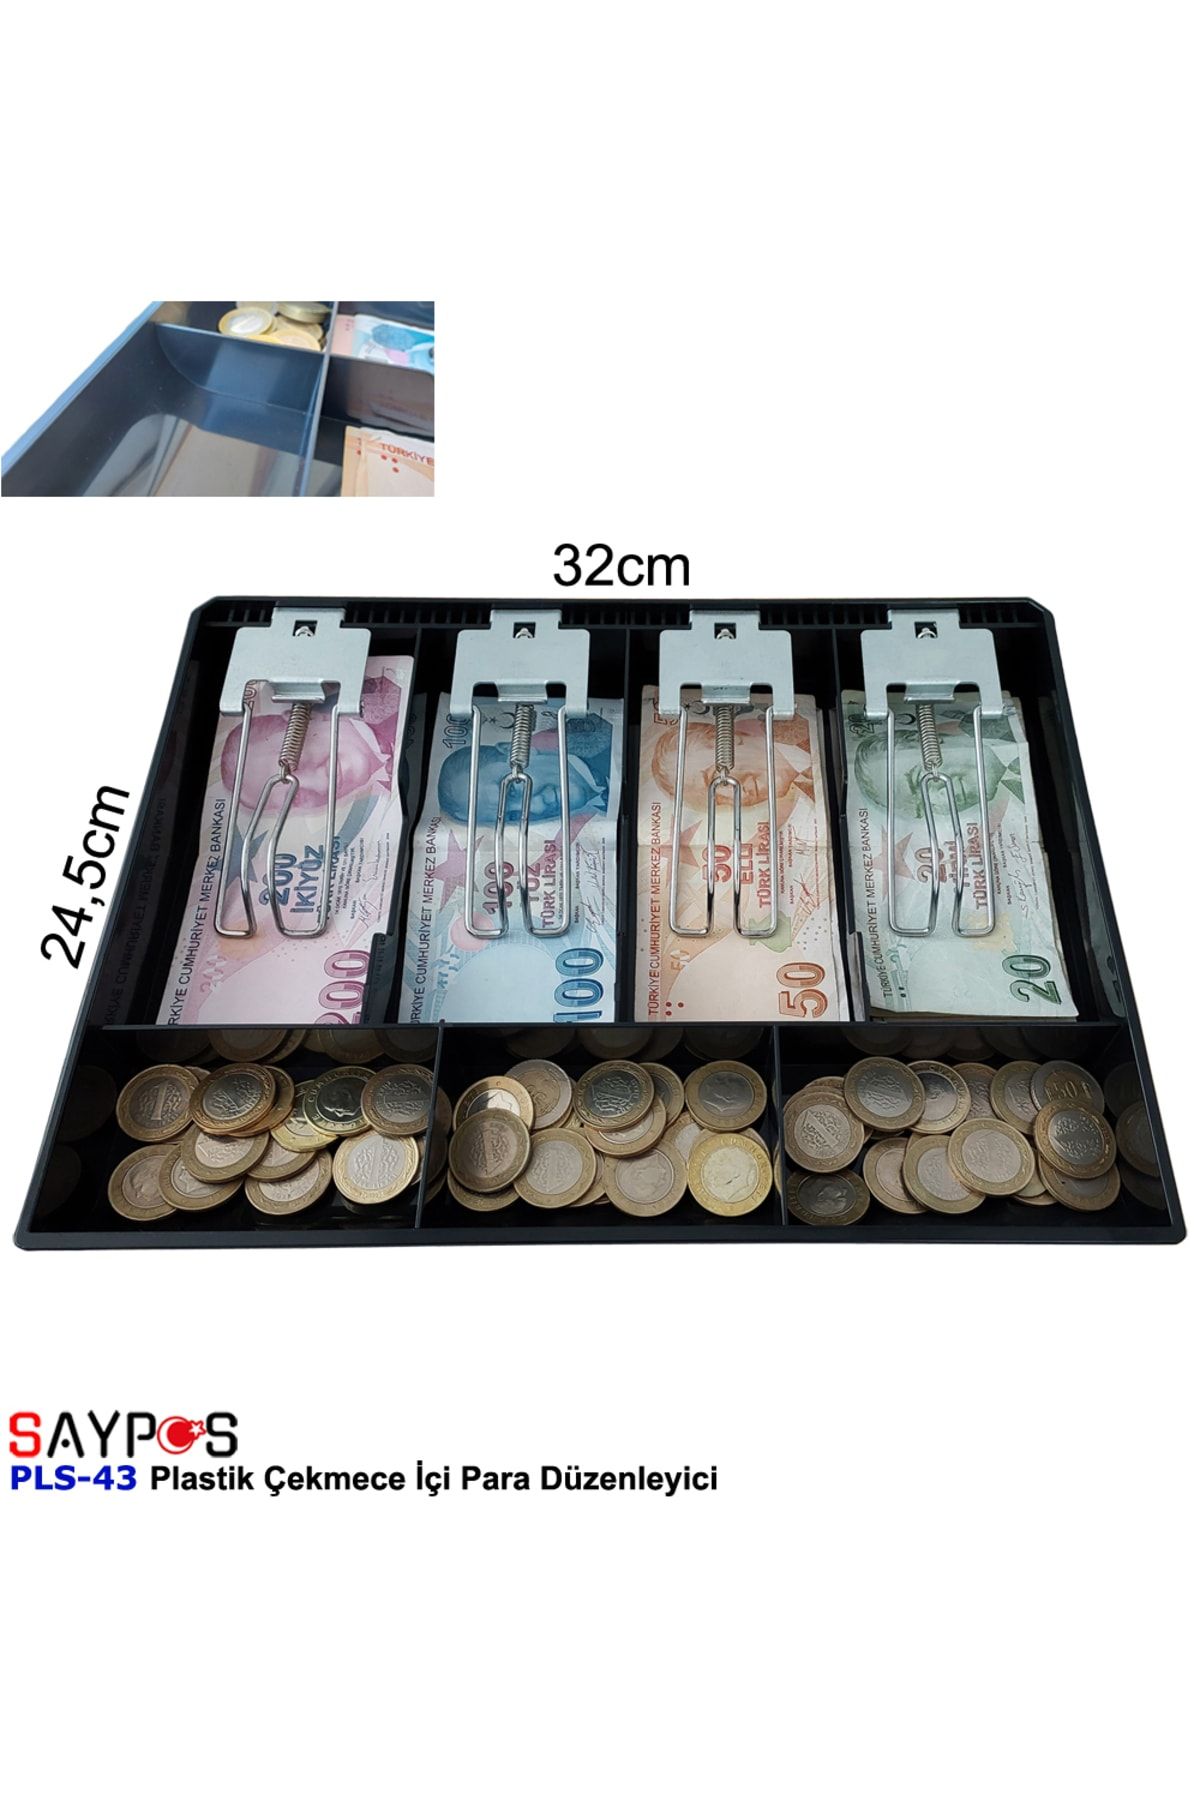 SAYPOS Rampalı Plastik Çekmece Içi Para Düzenleyici 4 Banknot 3 Bozuk Para Gözlü 32 X 24,5 X 3,5cm